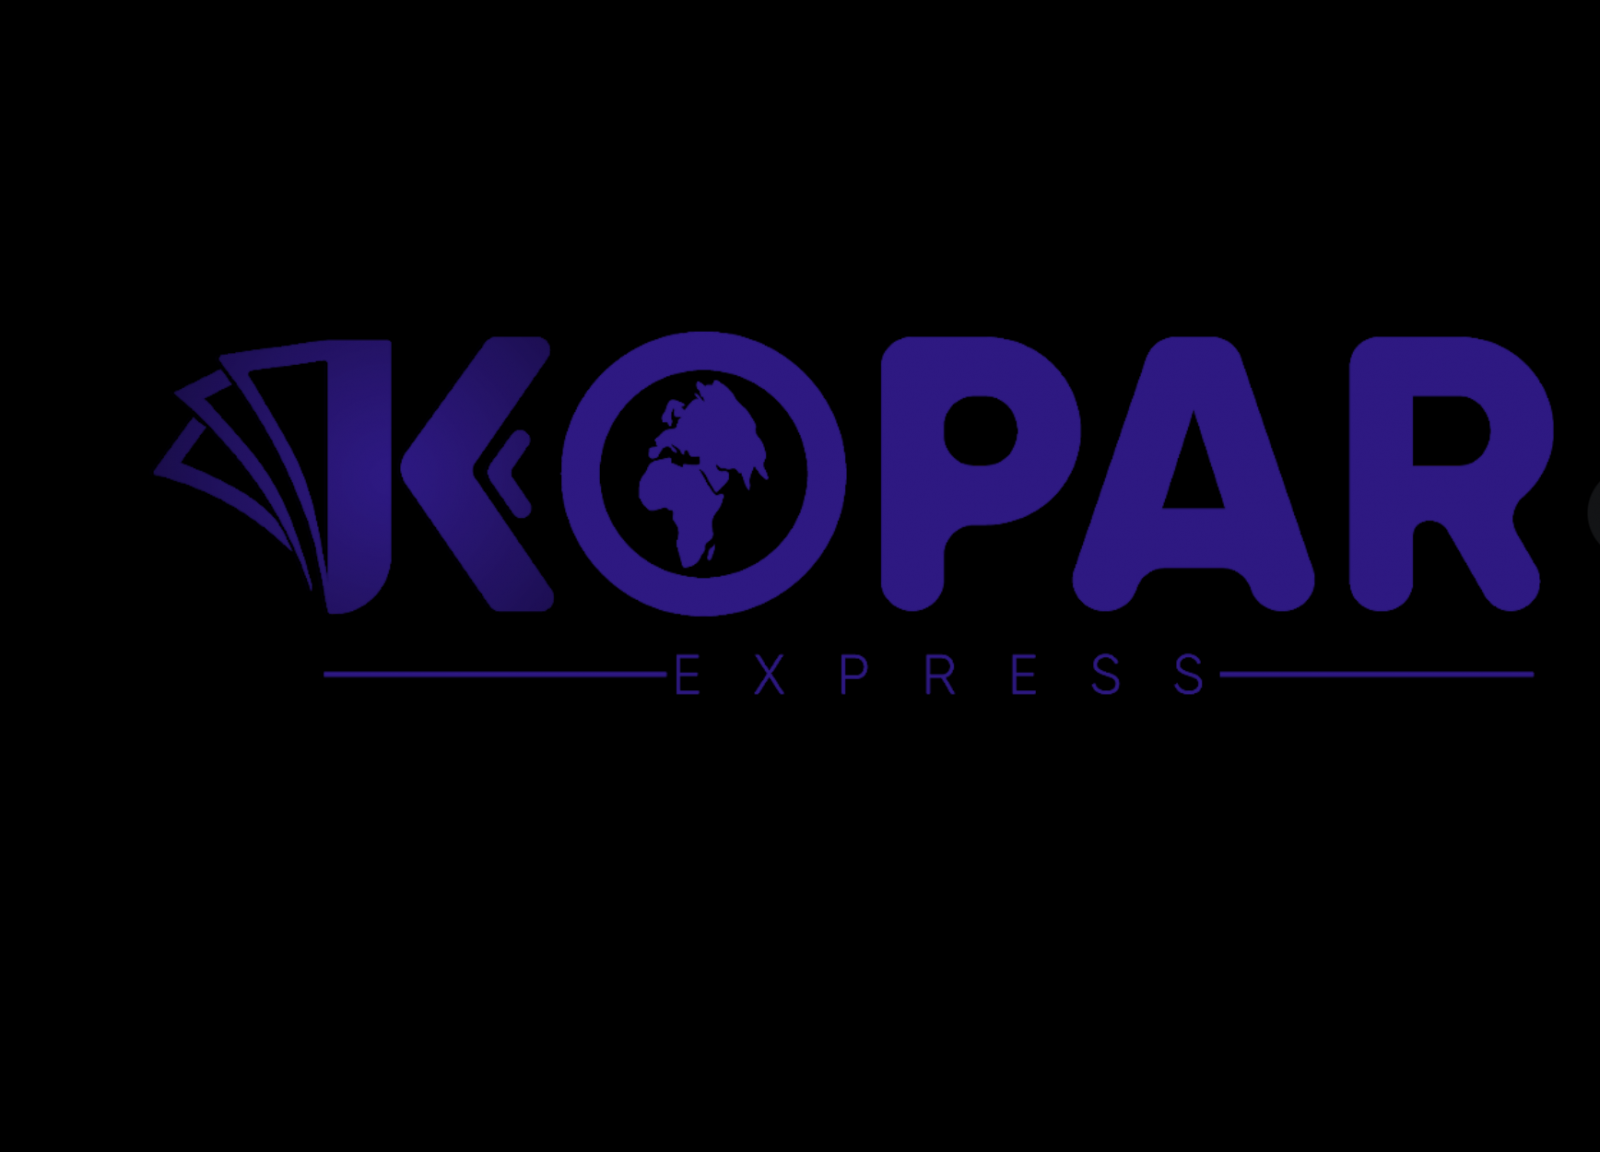 Escroquerie: Une autre plainte vise Seydou Ba de Kopar Express